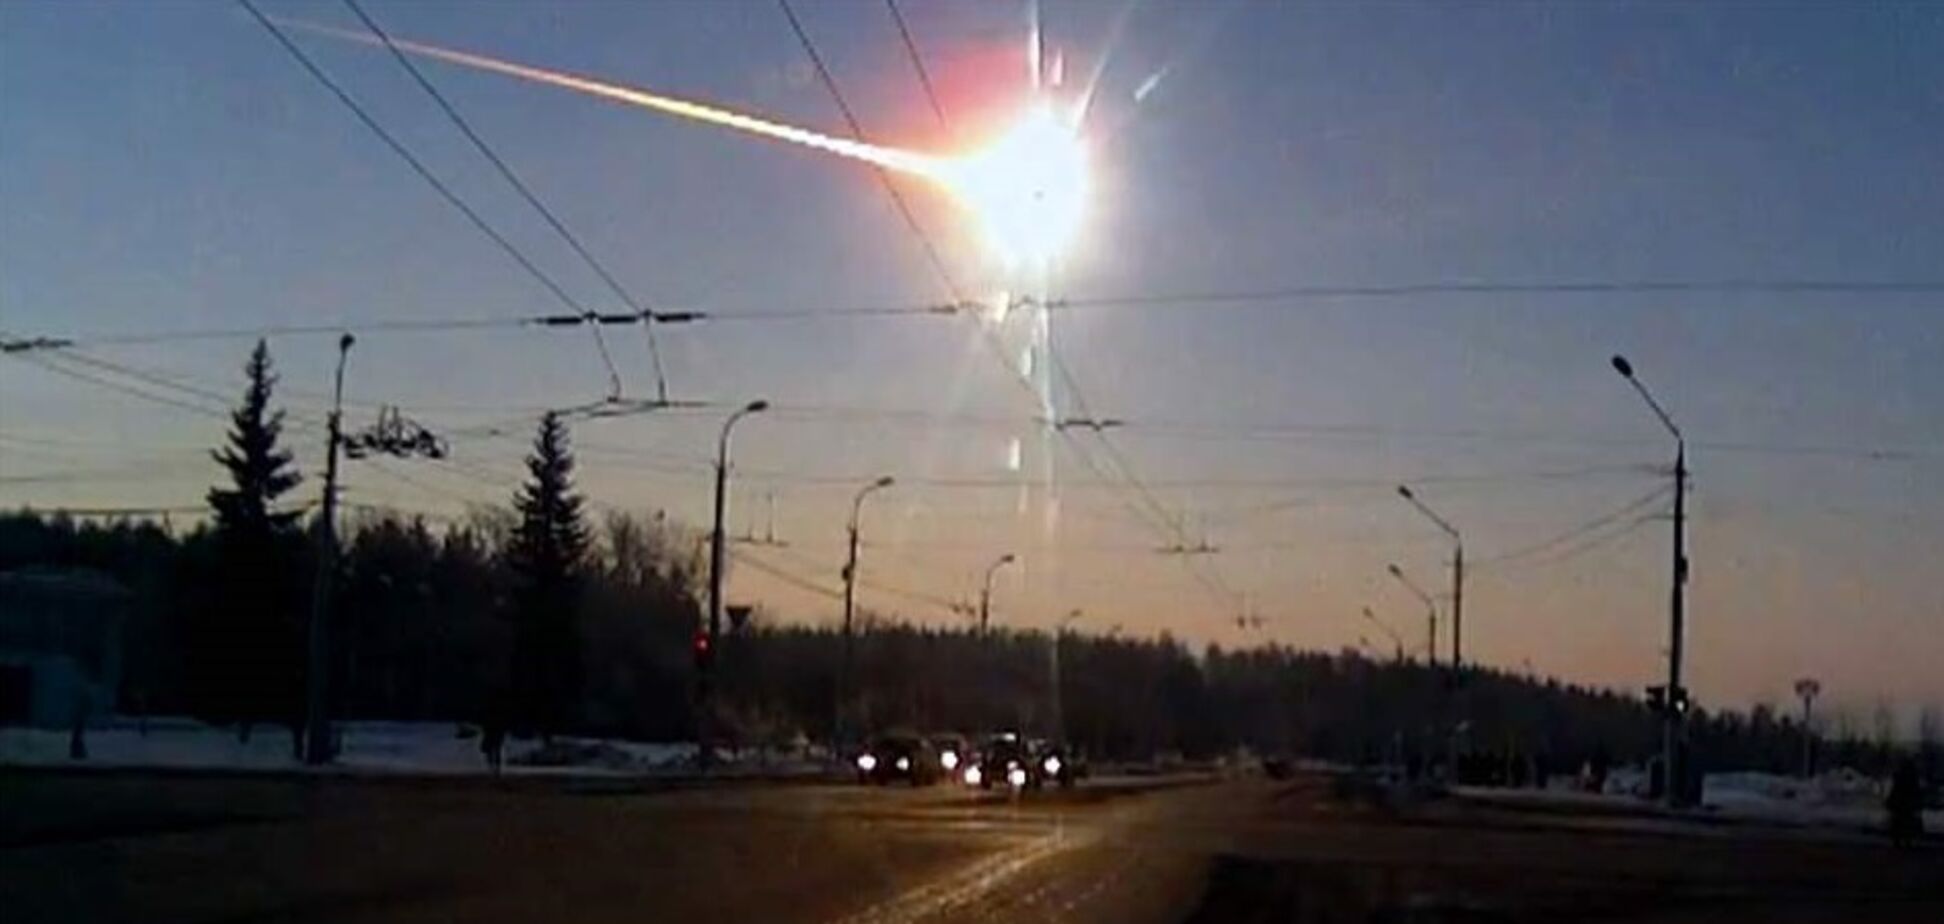 'Інопланетяни?' Загадковий спалах у небі налякав Сибір. Відео